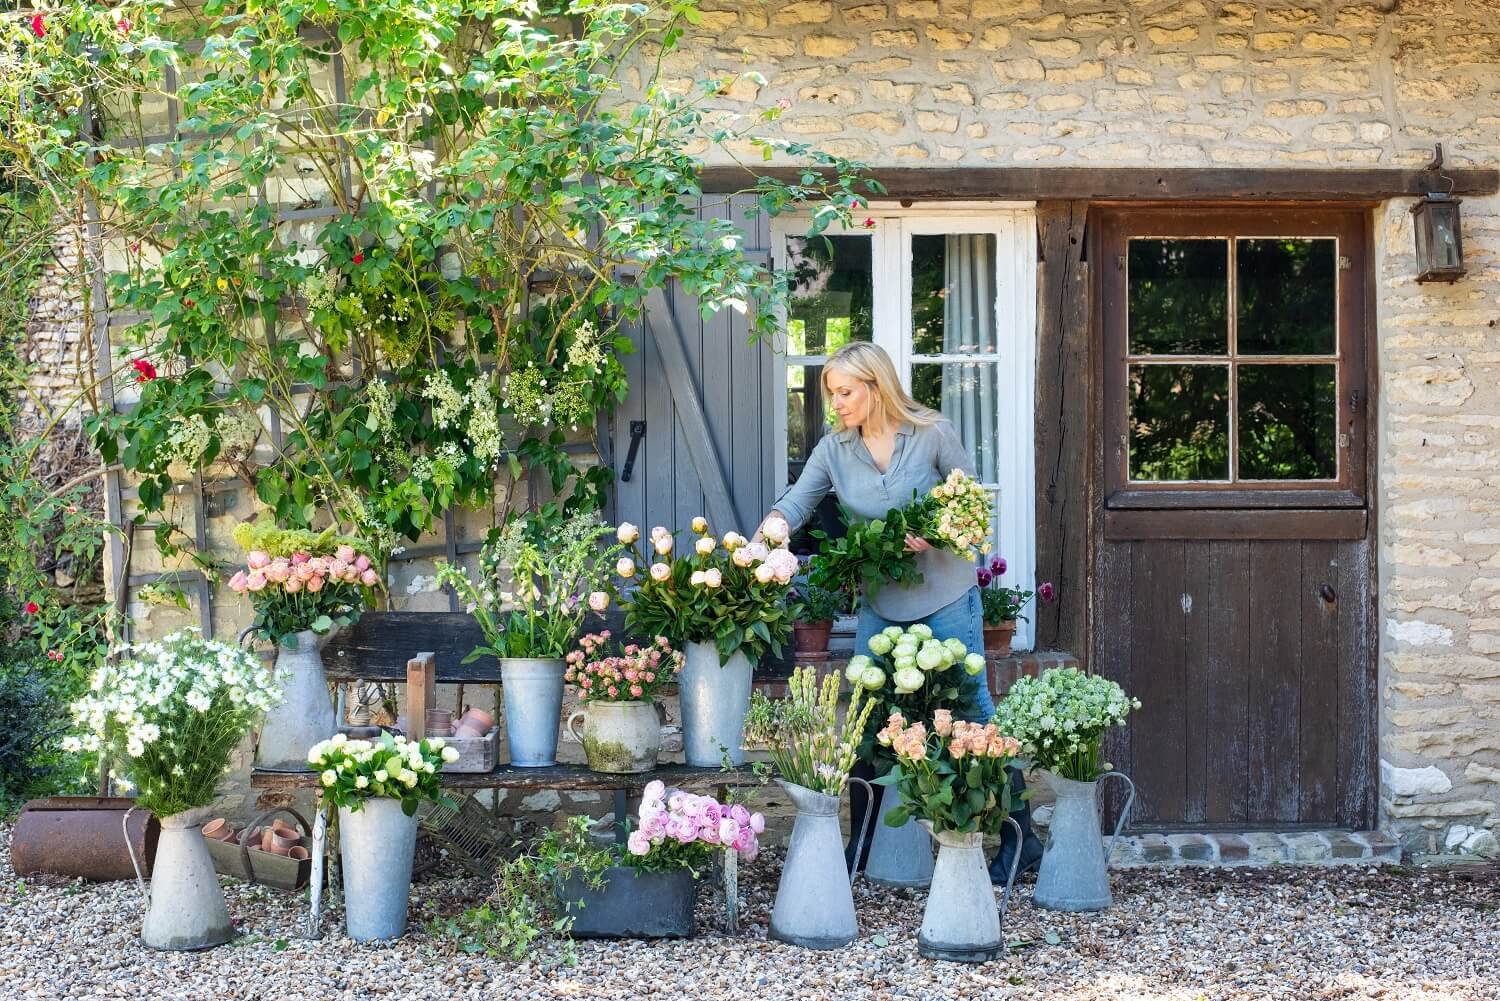 Andover Florist, Floral Home & Garden Shop